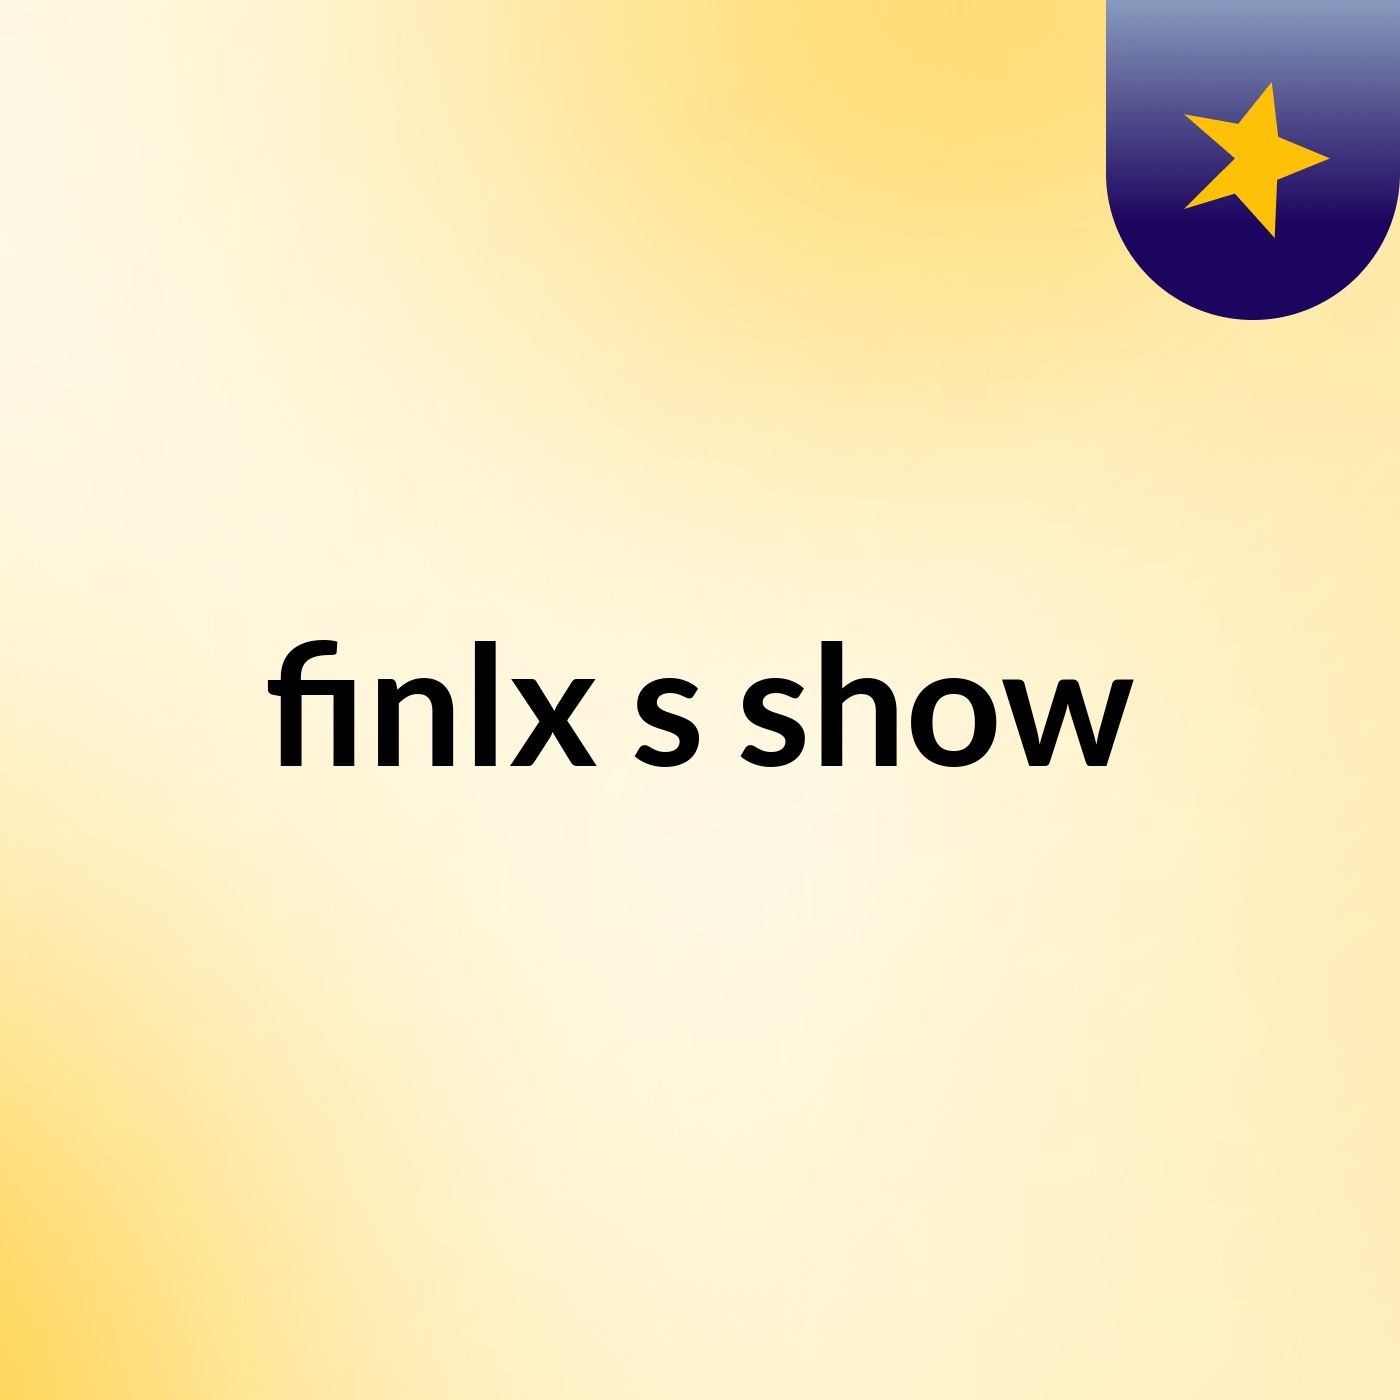 finlx's show